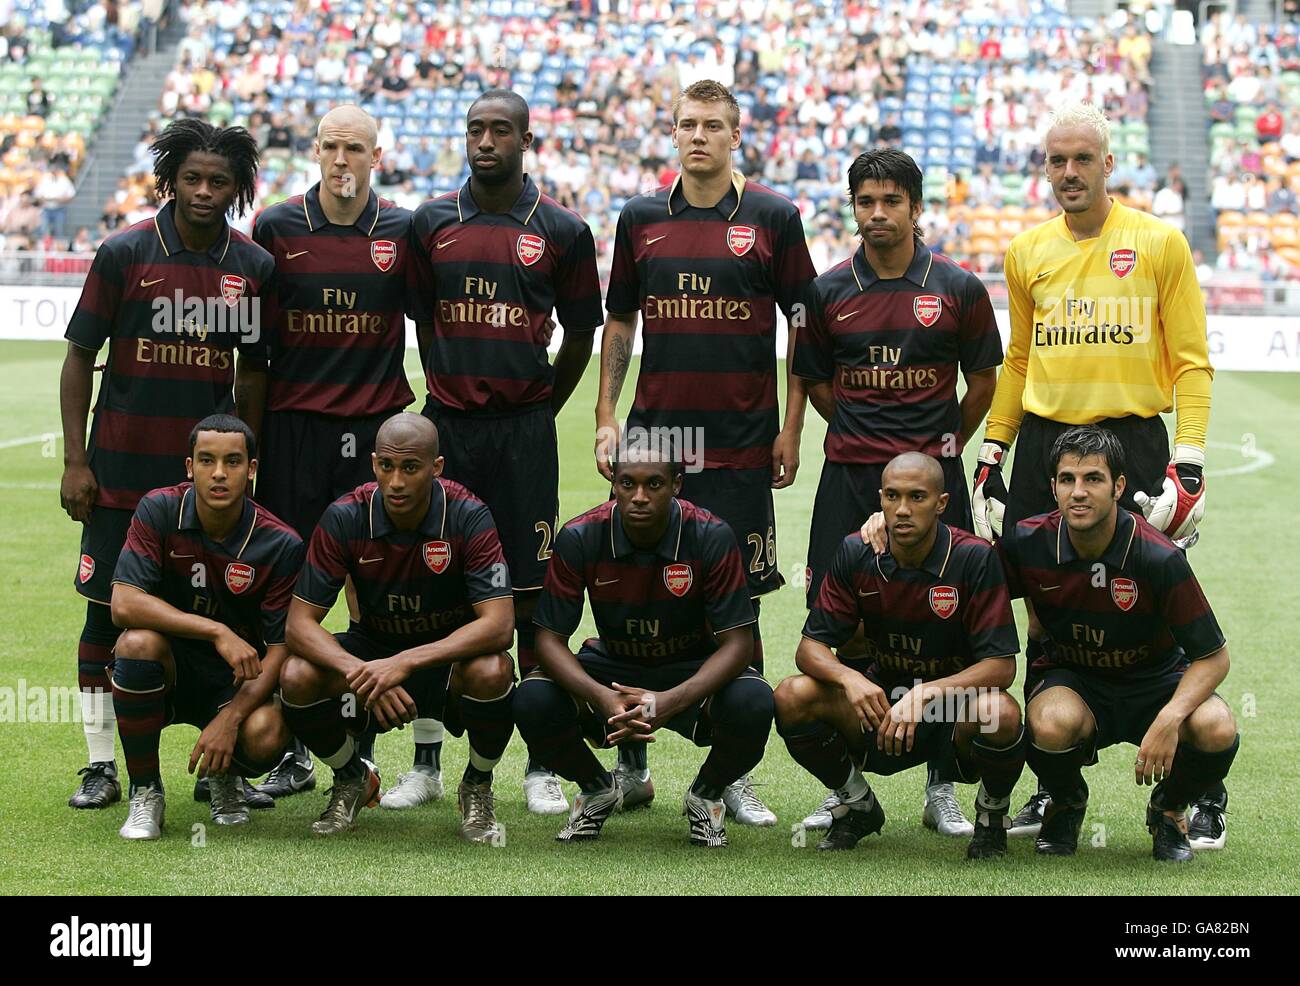 Calcio - LG Amsterdam Tournament 2007 - Lazio / Arsenal - Amsterdam Arena. Gruppo del team Arsenal Foto Stock